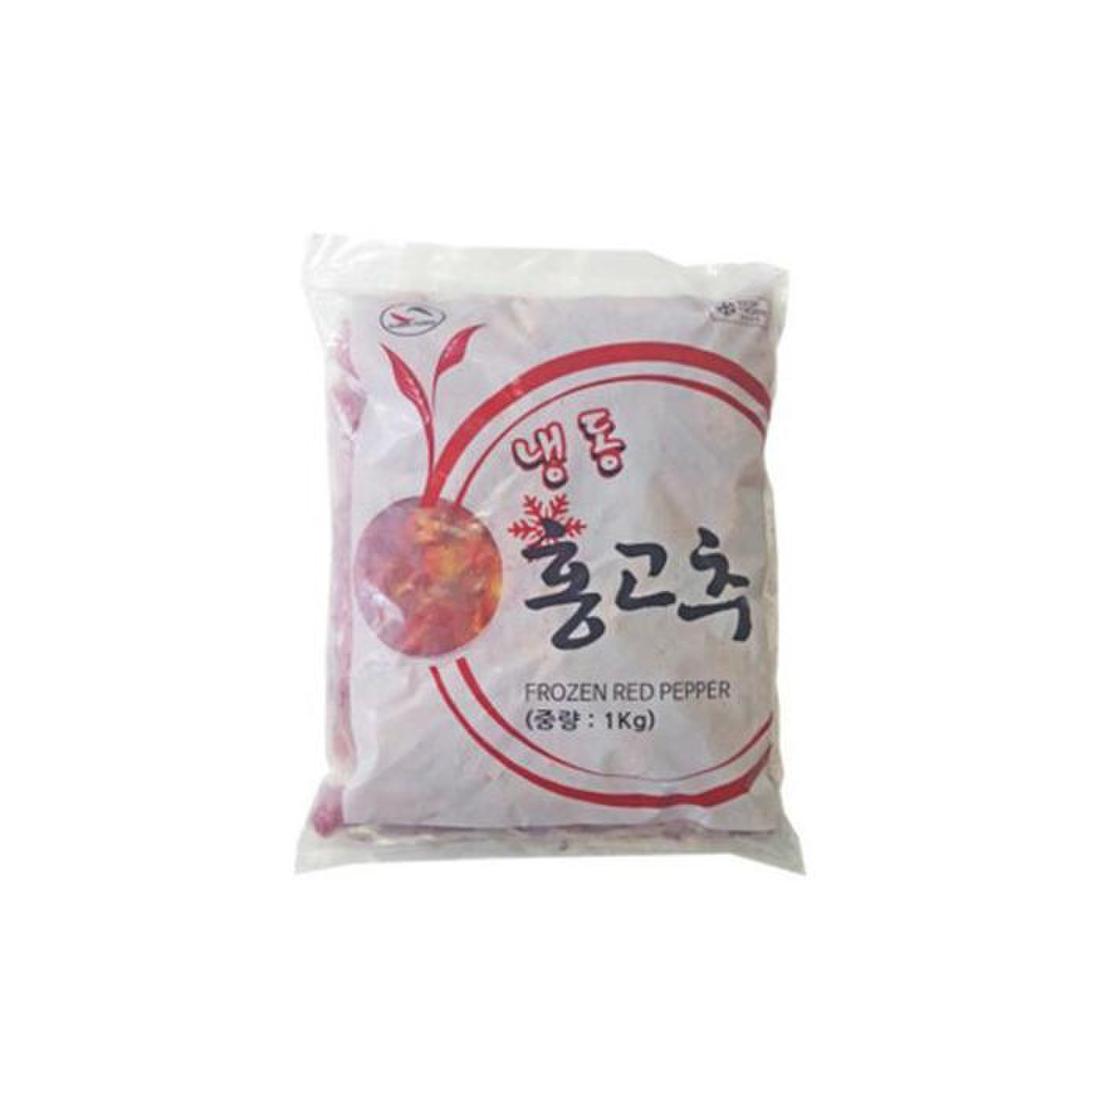 그린무역 홍고추 슬라이스 1kg(1)